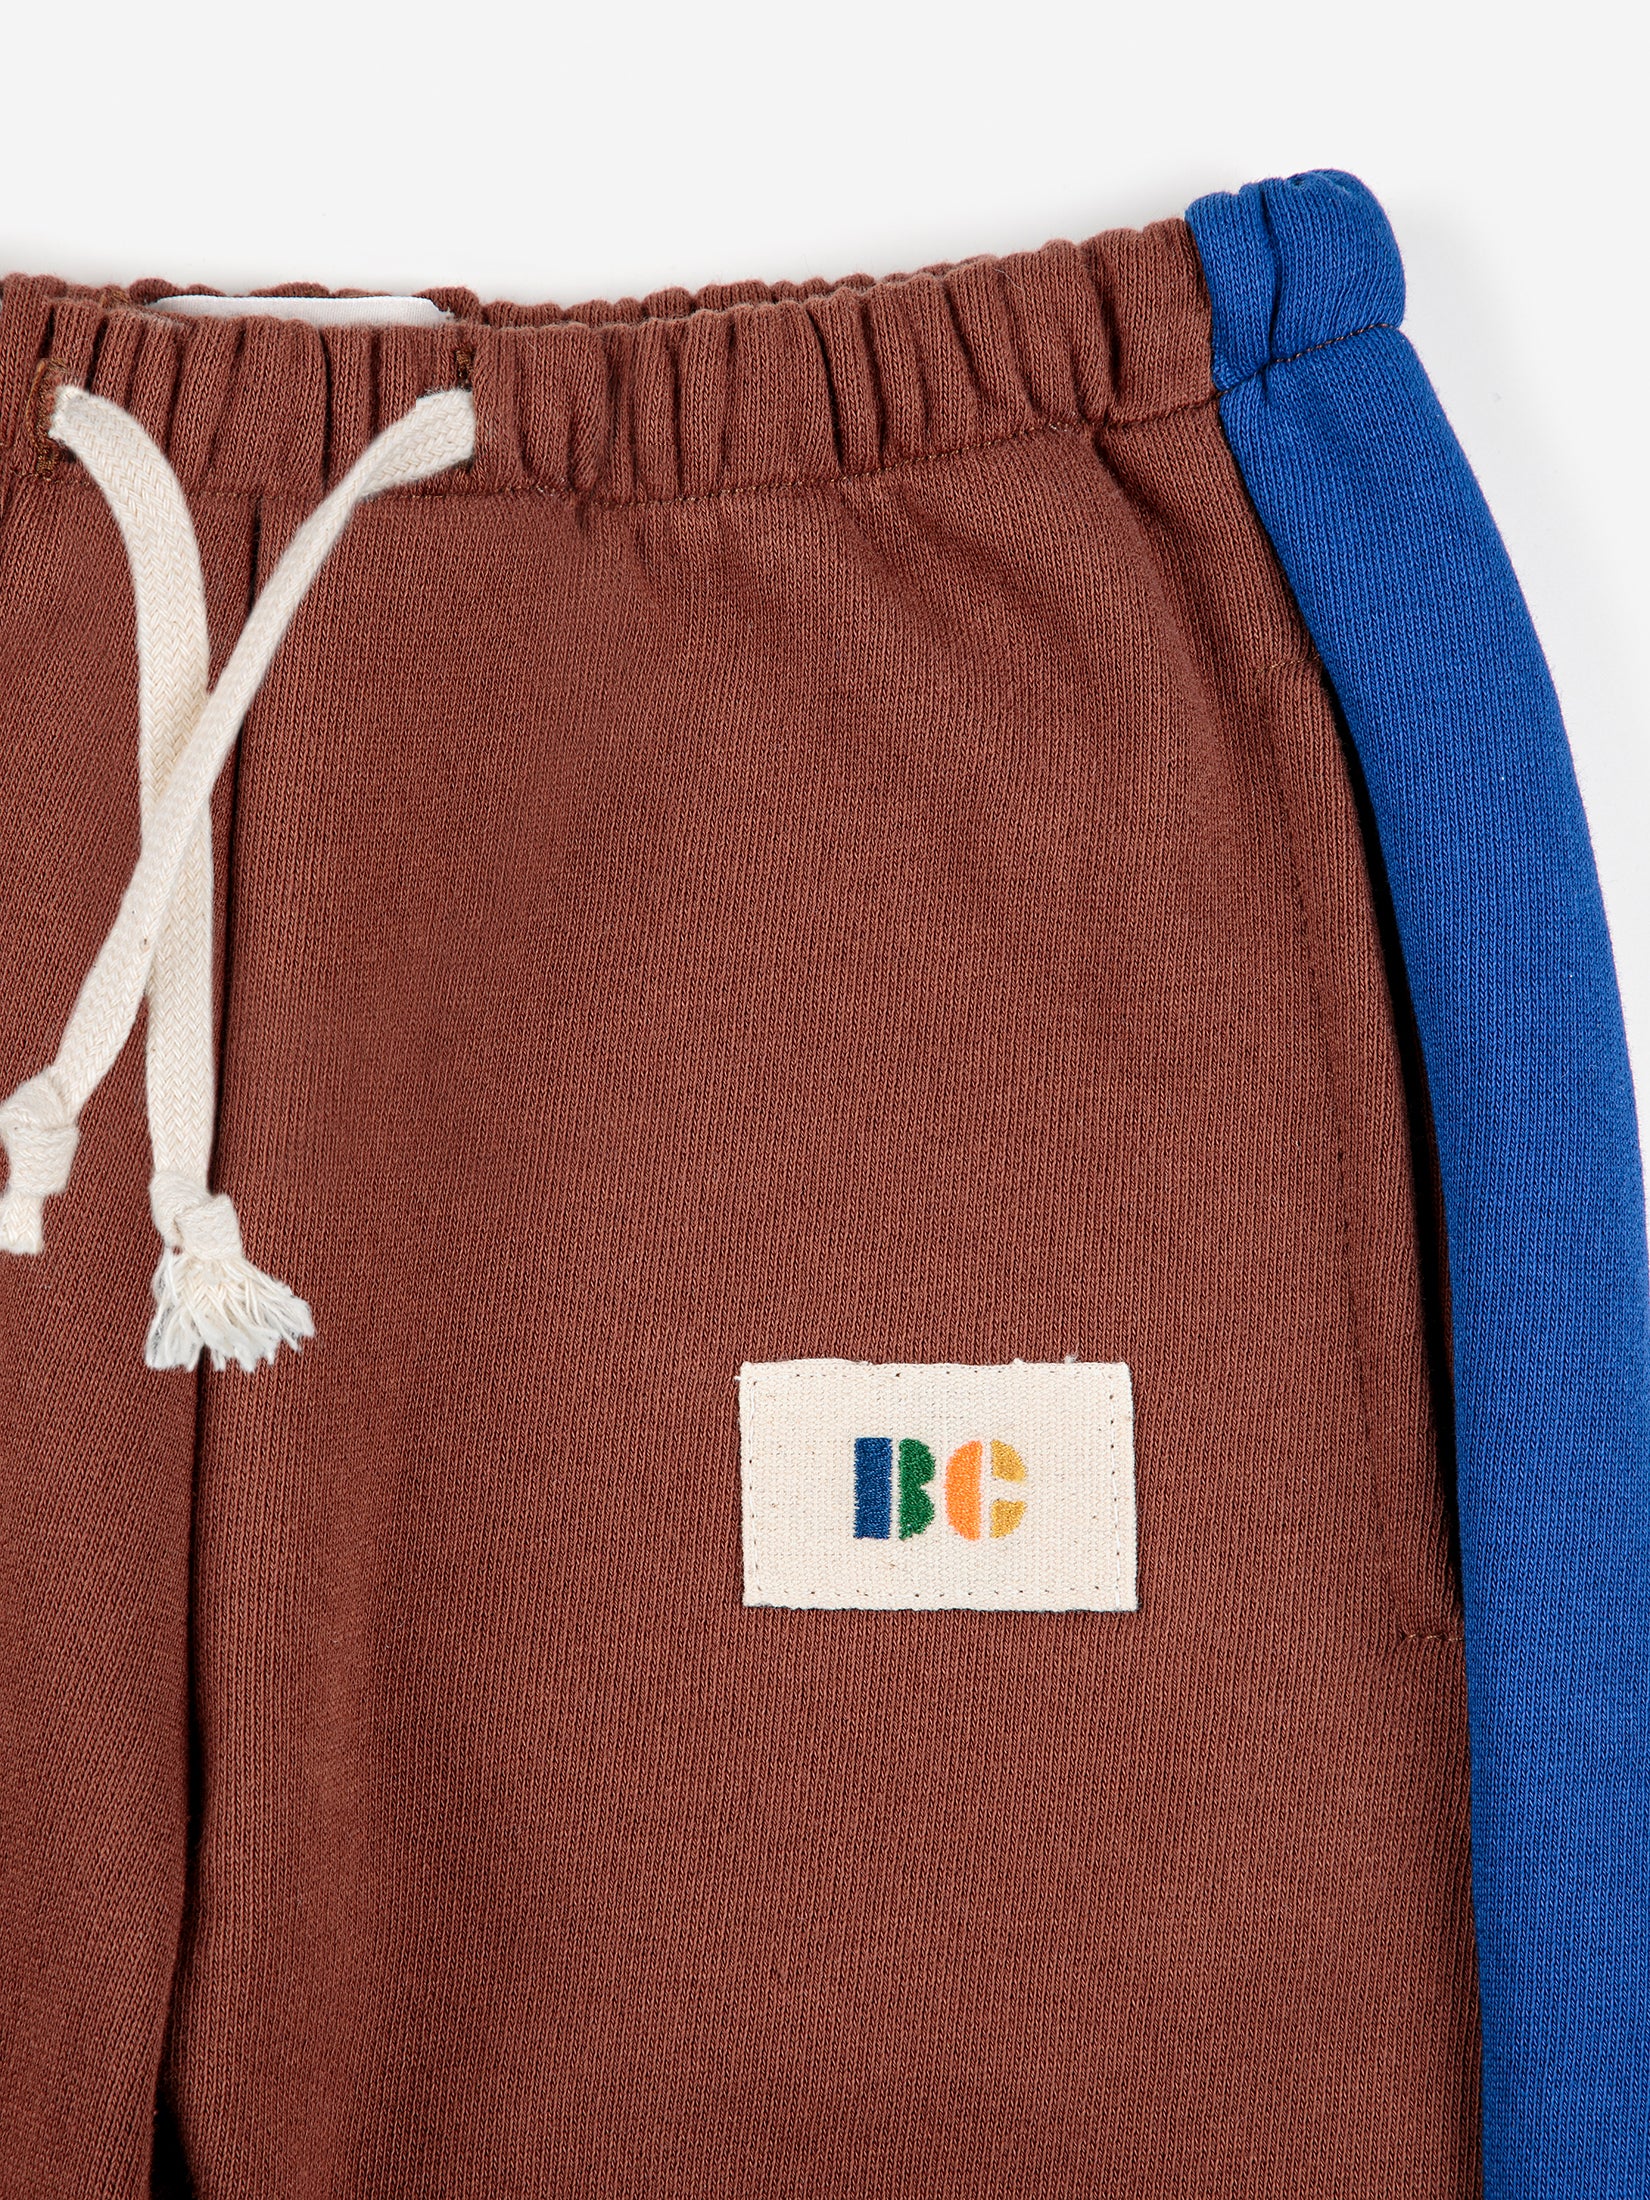 Bobo Choses | BC Label jogging pants